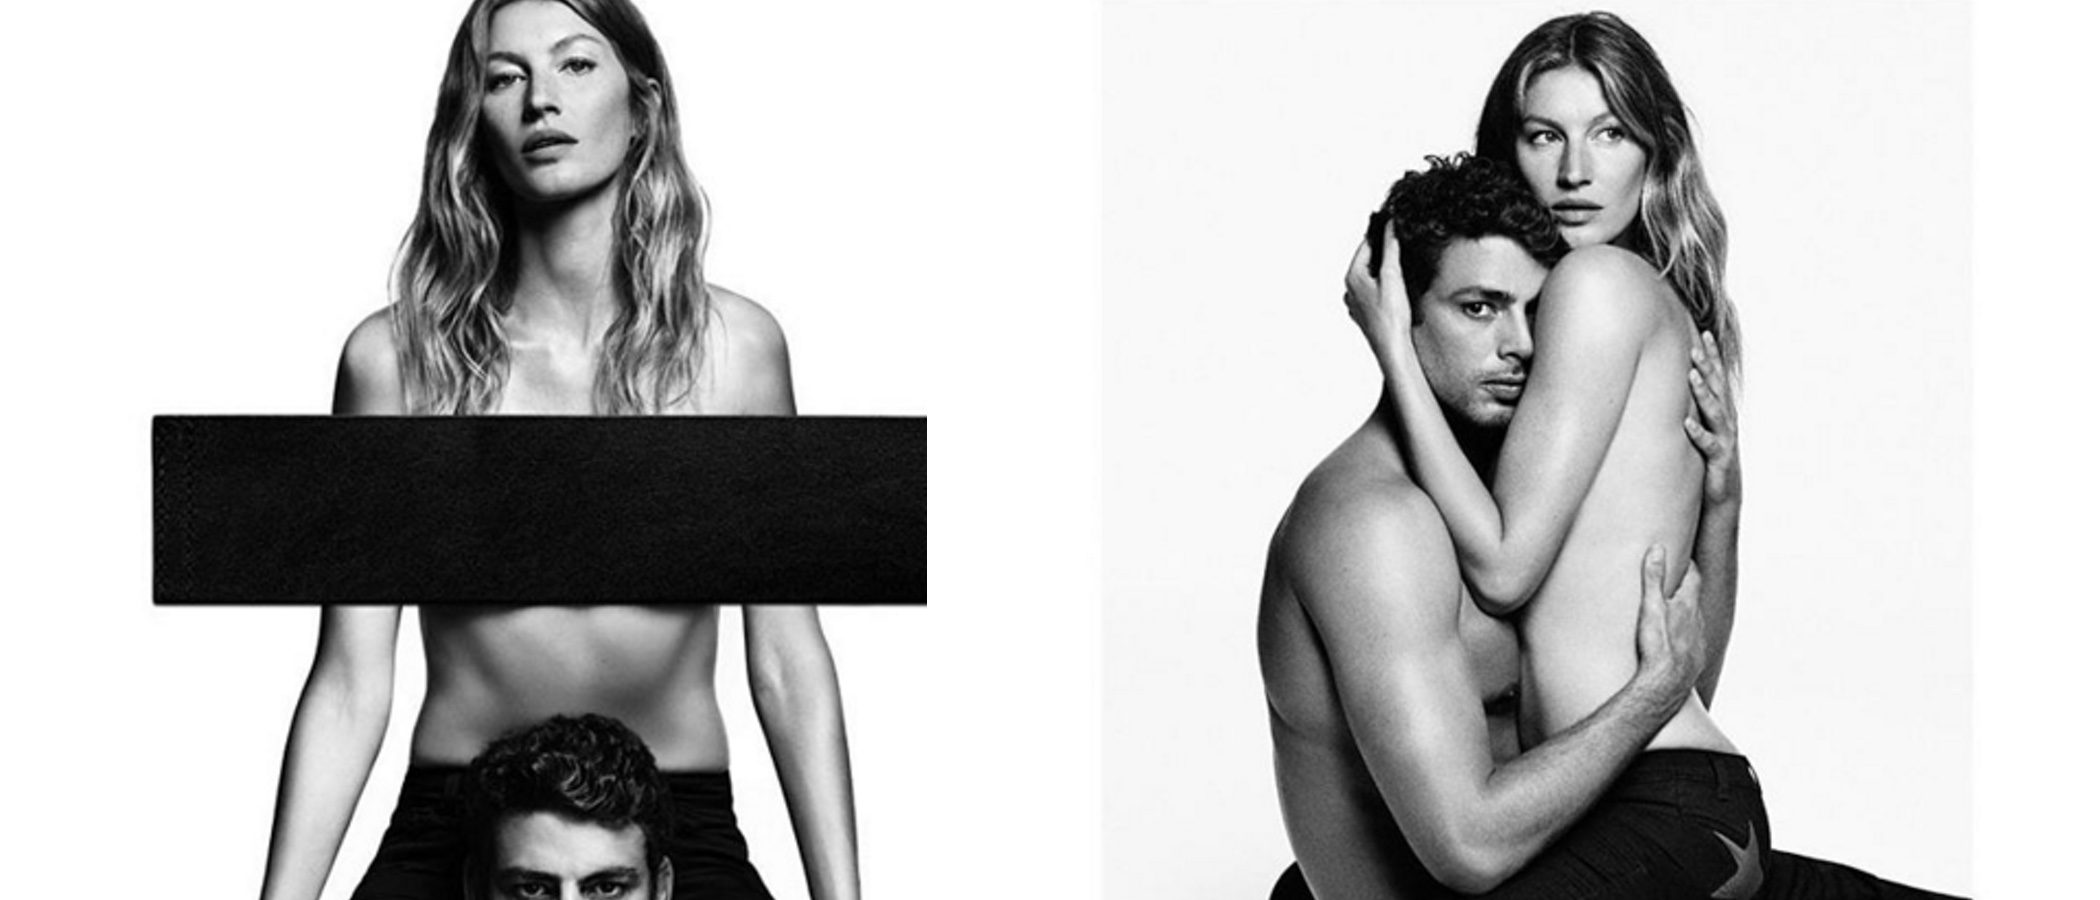 Givenchy encuentra inspiración en el topless de Kim Kardashian para su nueva campaña con Gisele Bündchen